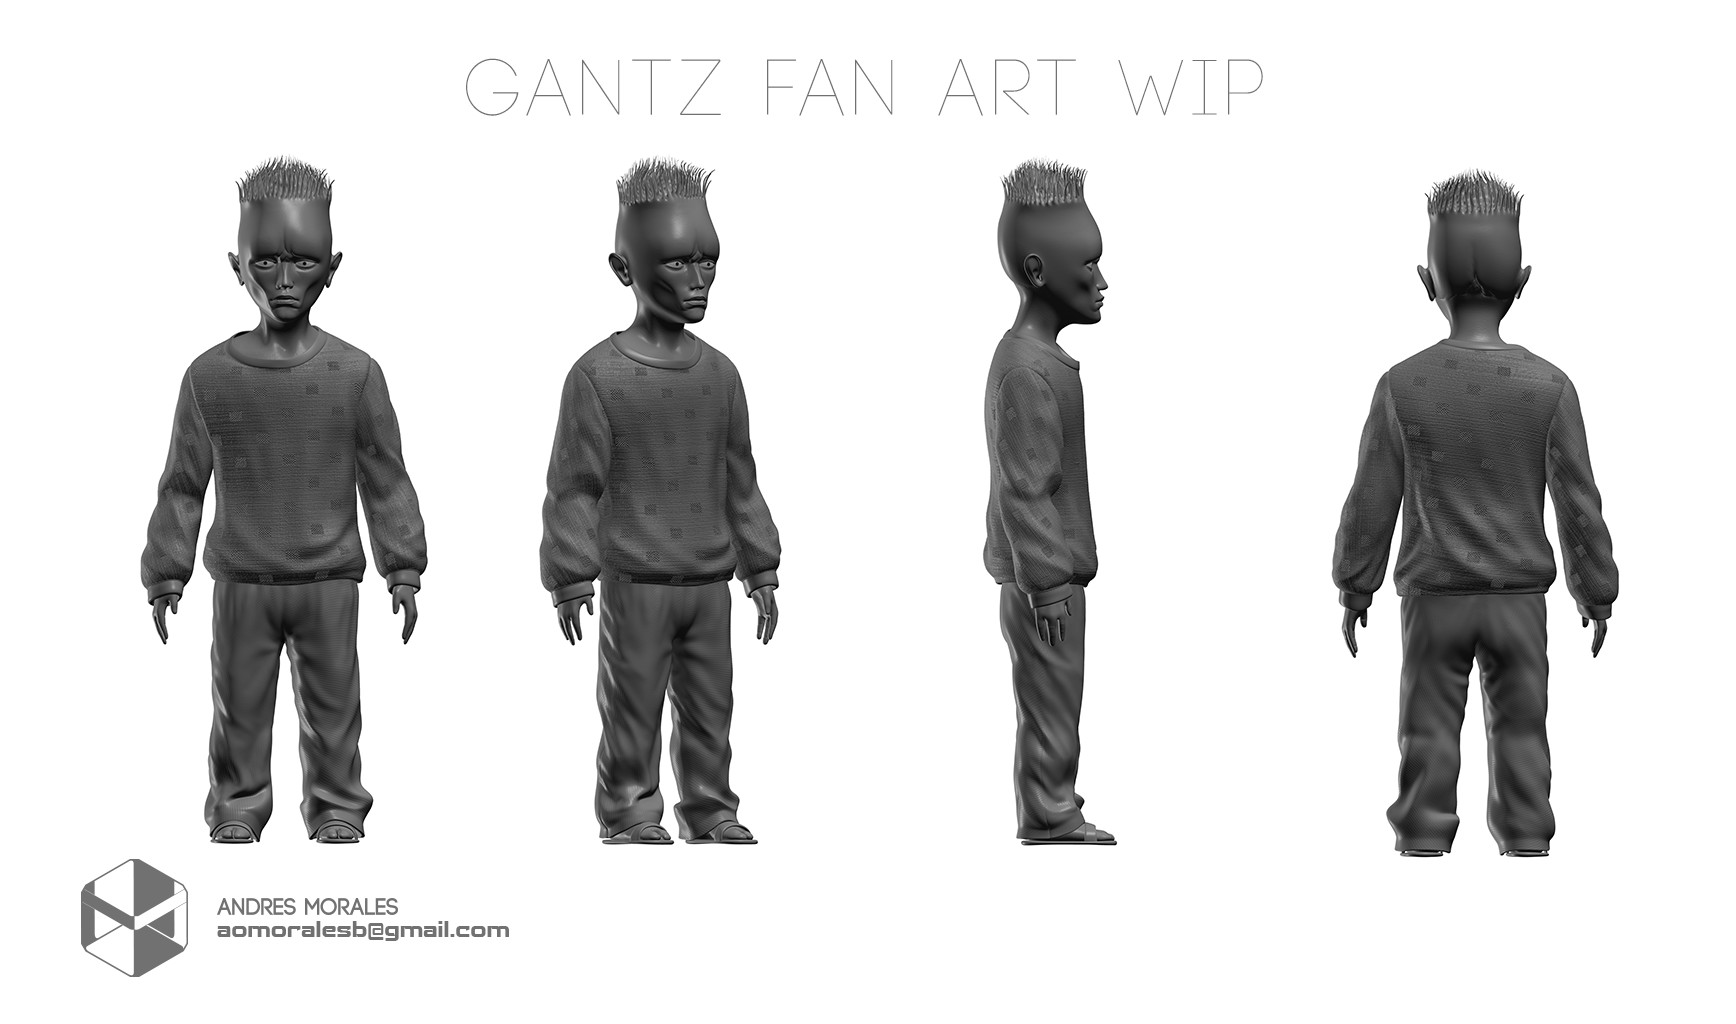 Anatom Zero Gantz Onion Alien